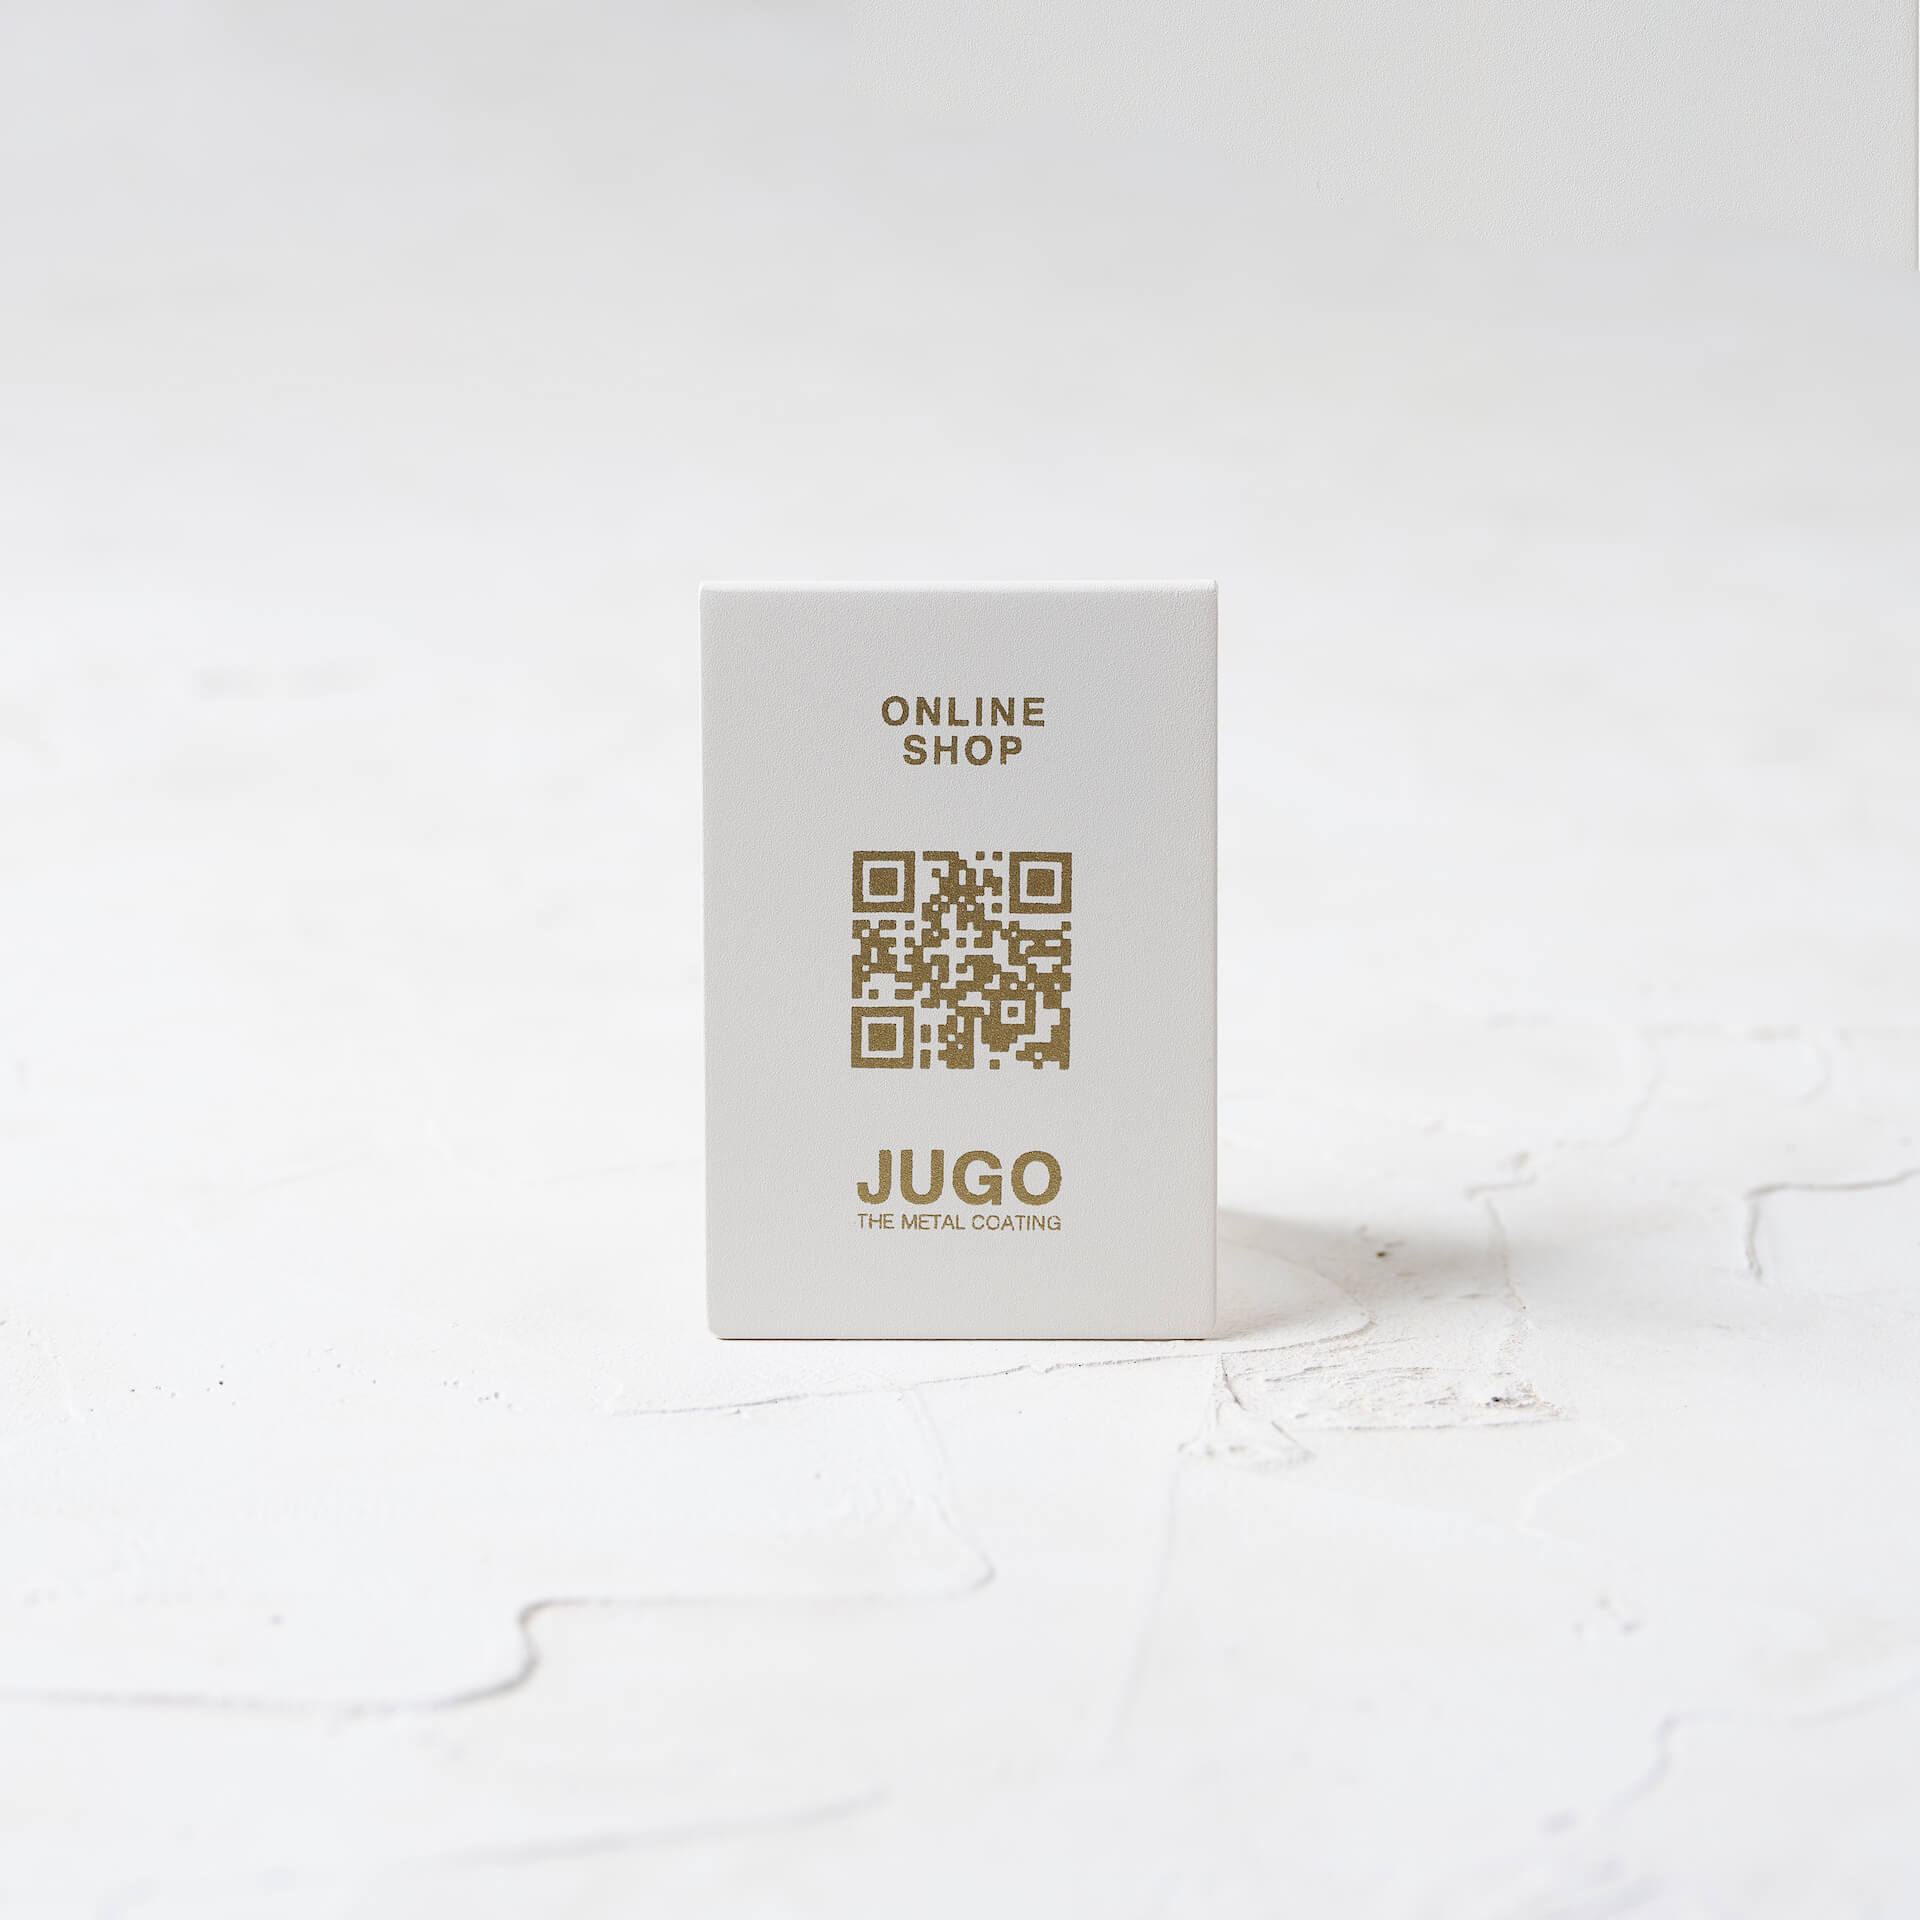 JUGO STAND_BASE COLOR : SATIN WHITE<br />
FONT COLOR : GOLD